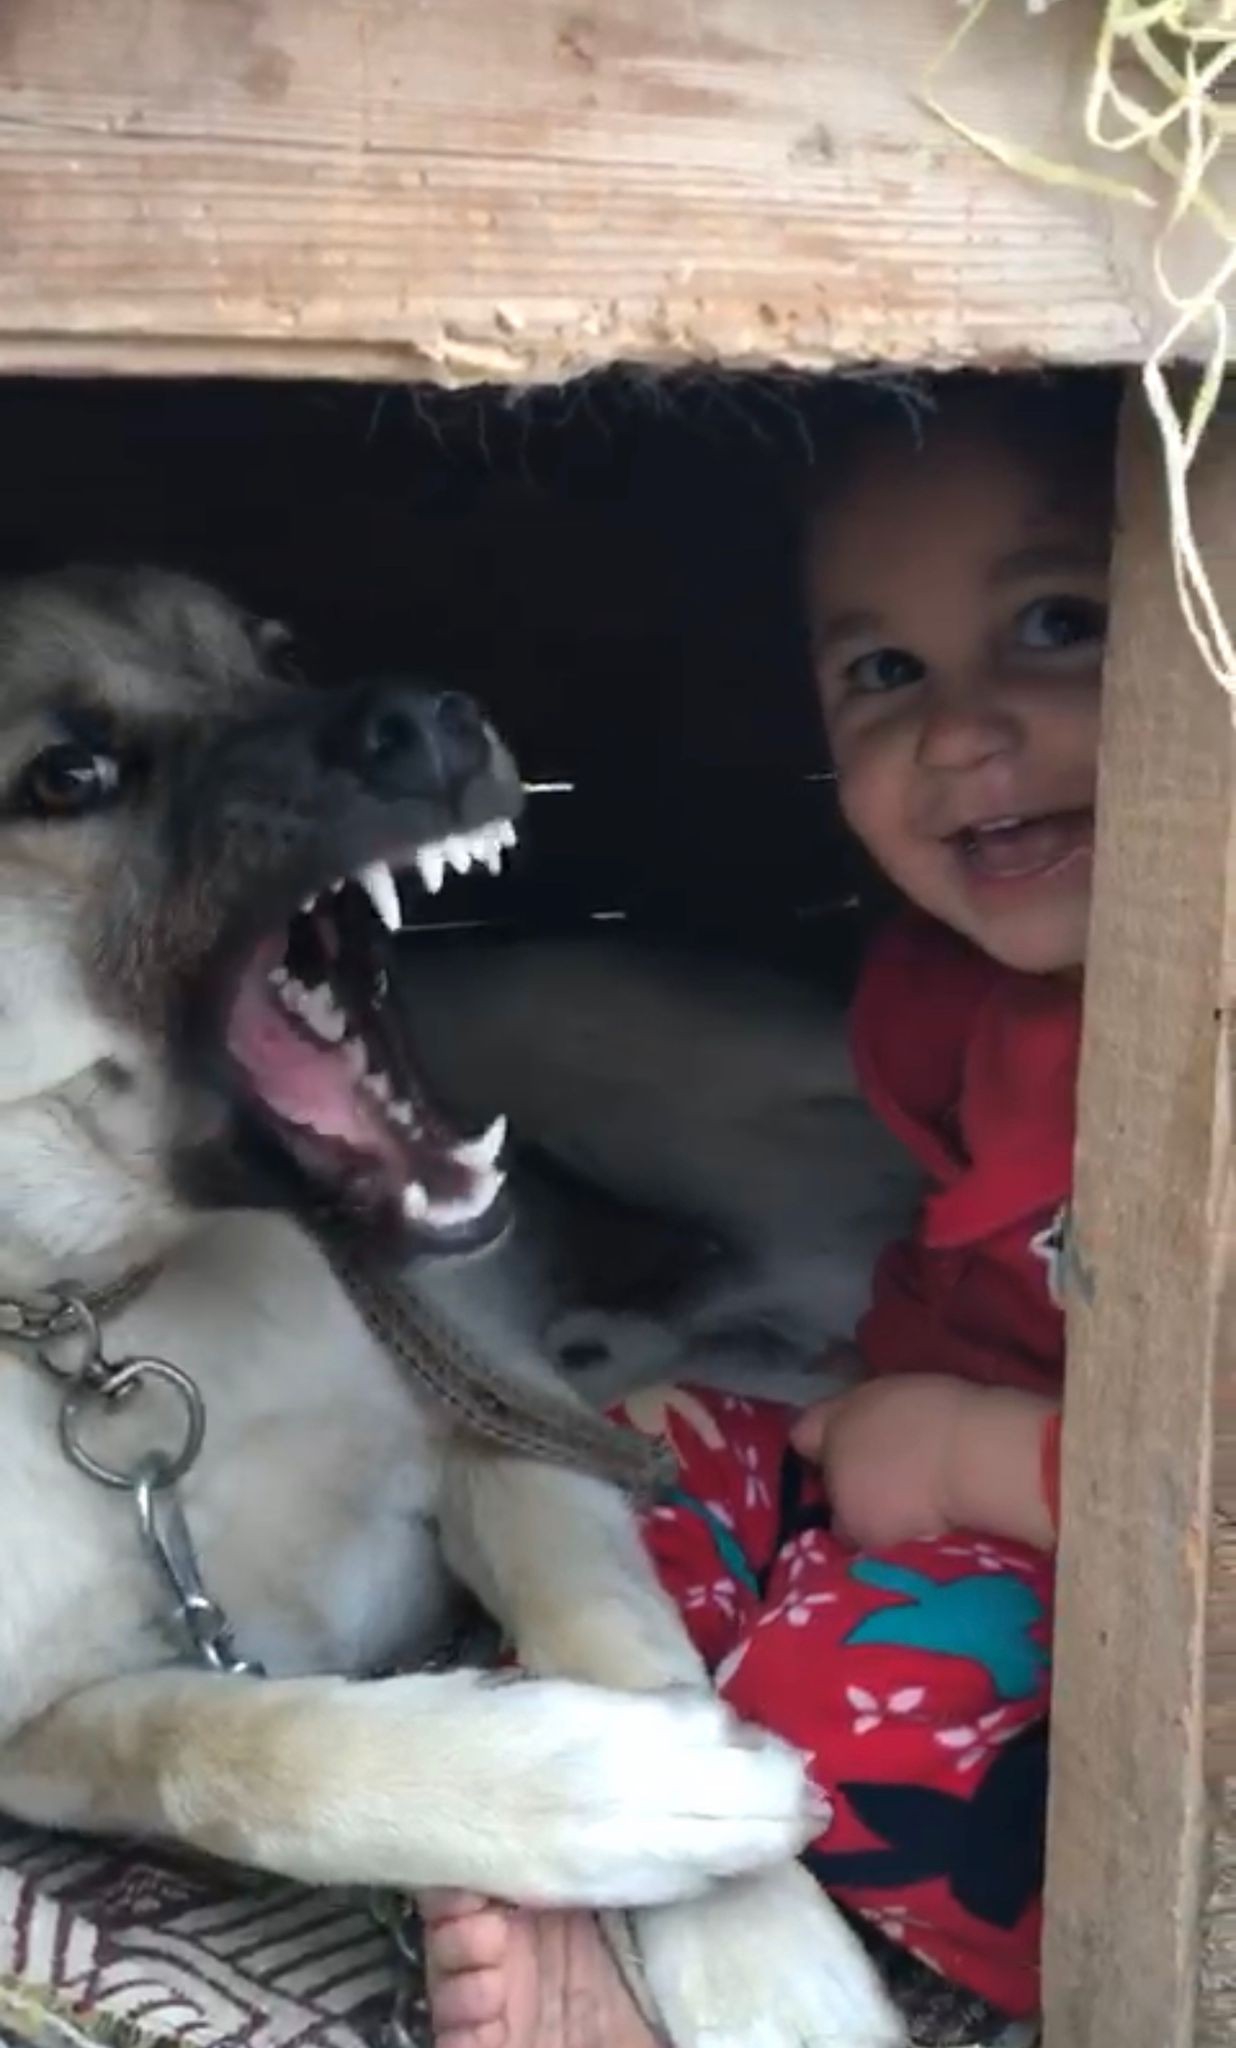 Erzurum’da küçük çocuğun köpek sevgisi görenleri gülümsetti